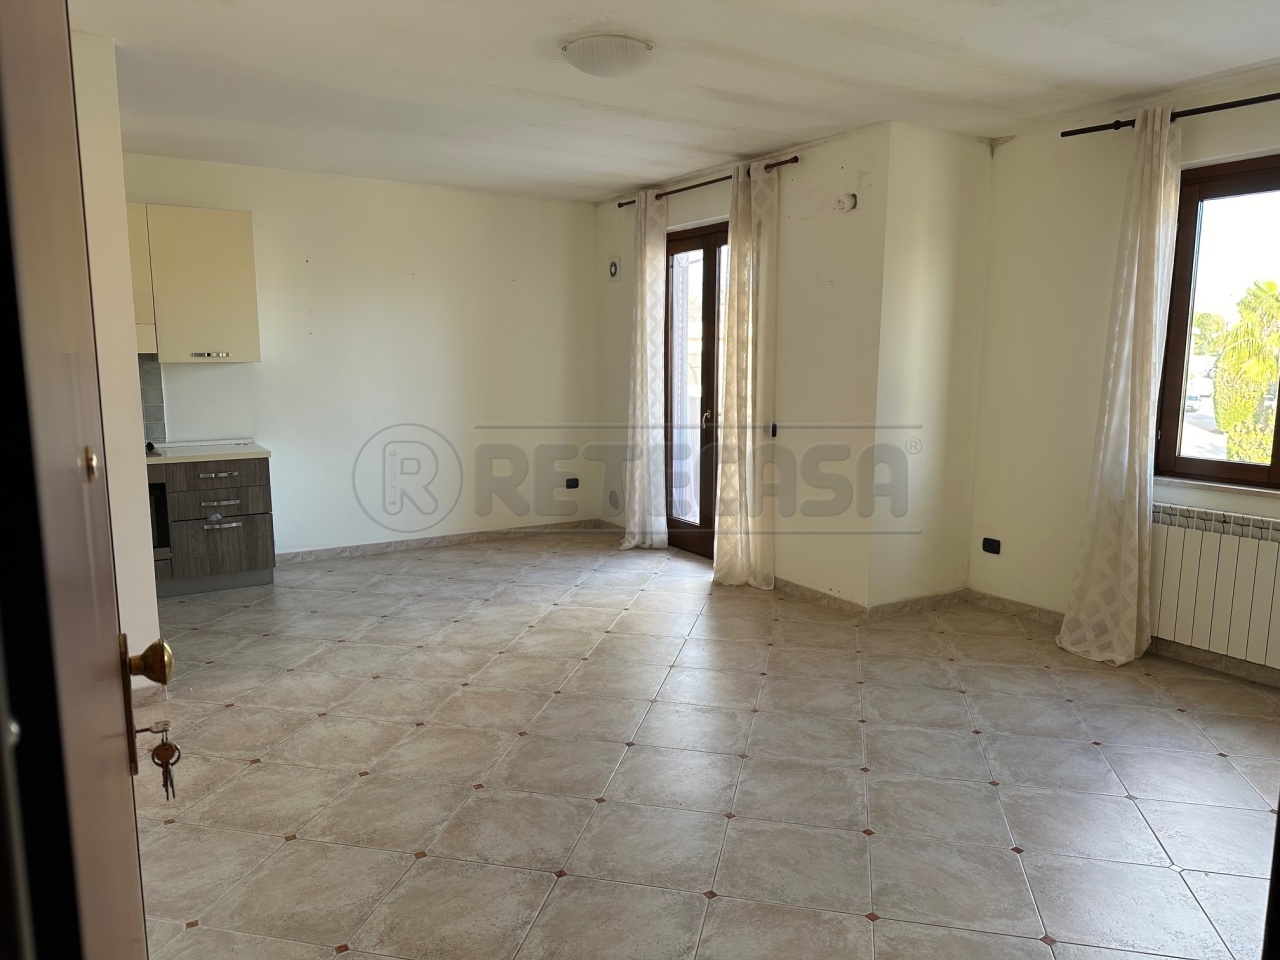 Appartamento in affitto a Mazara del Vallo, 6 locali, prezzo € 400 | PortaleAgenzieImmobiliari.it